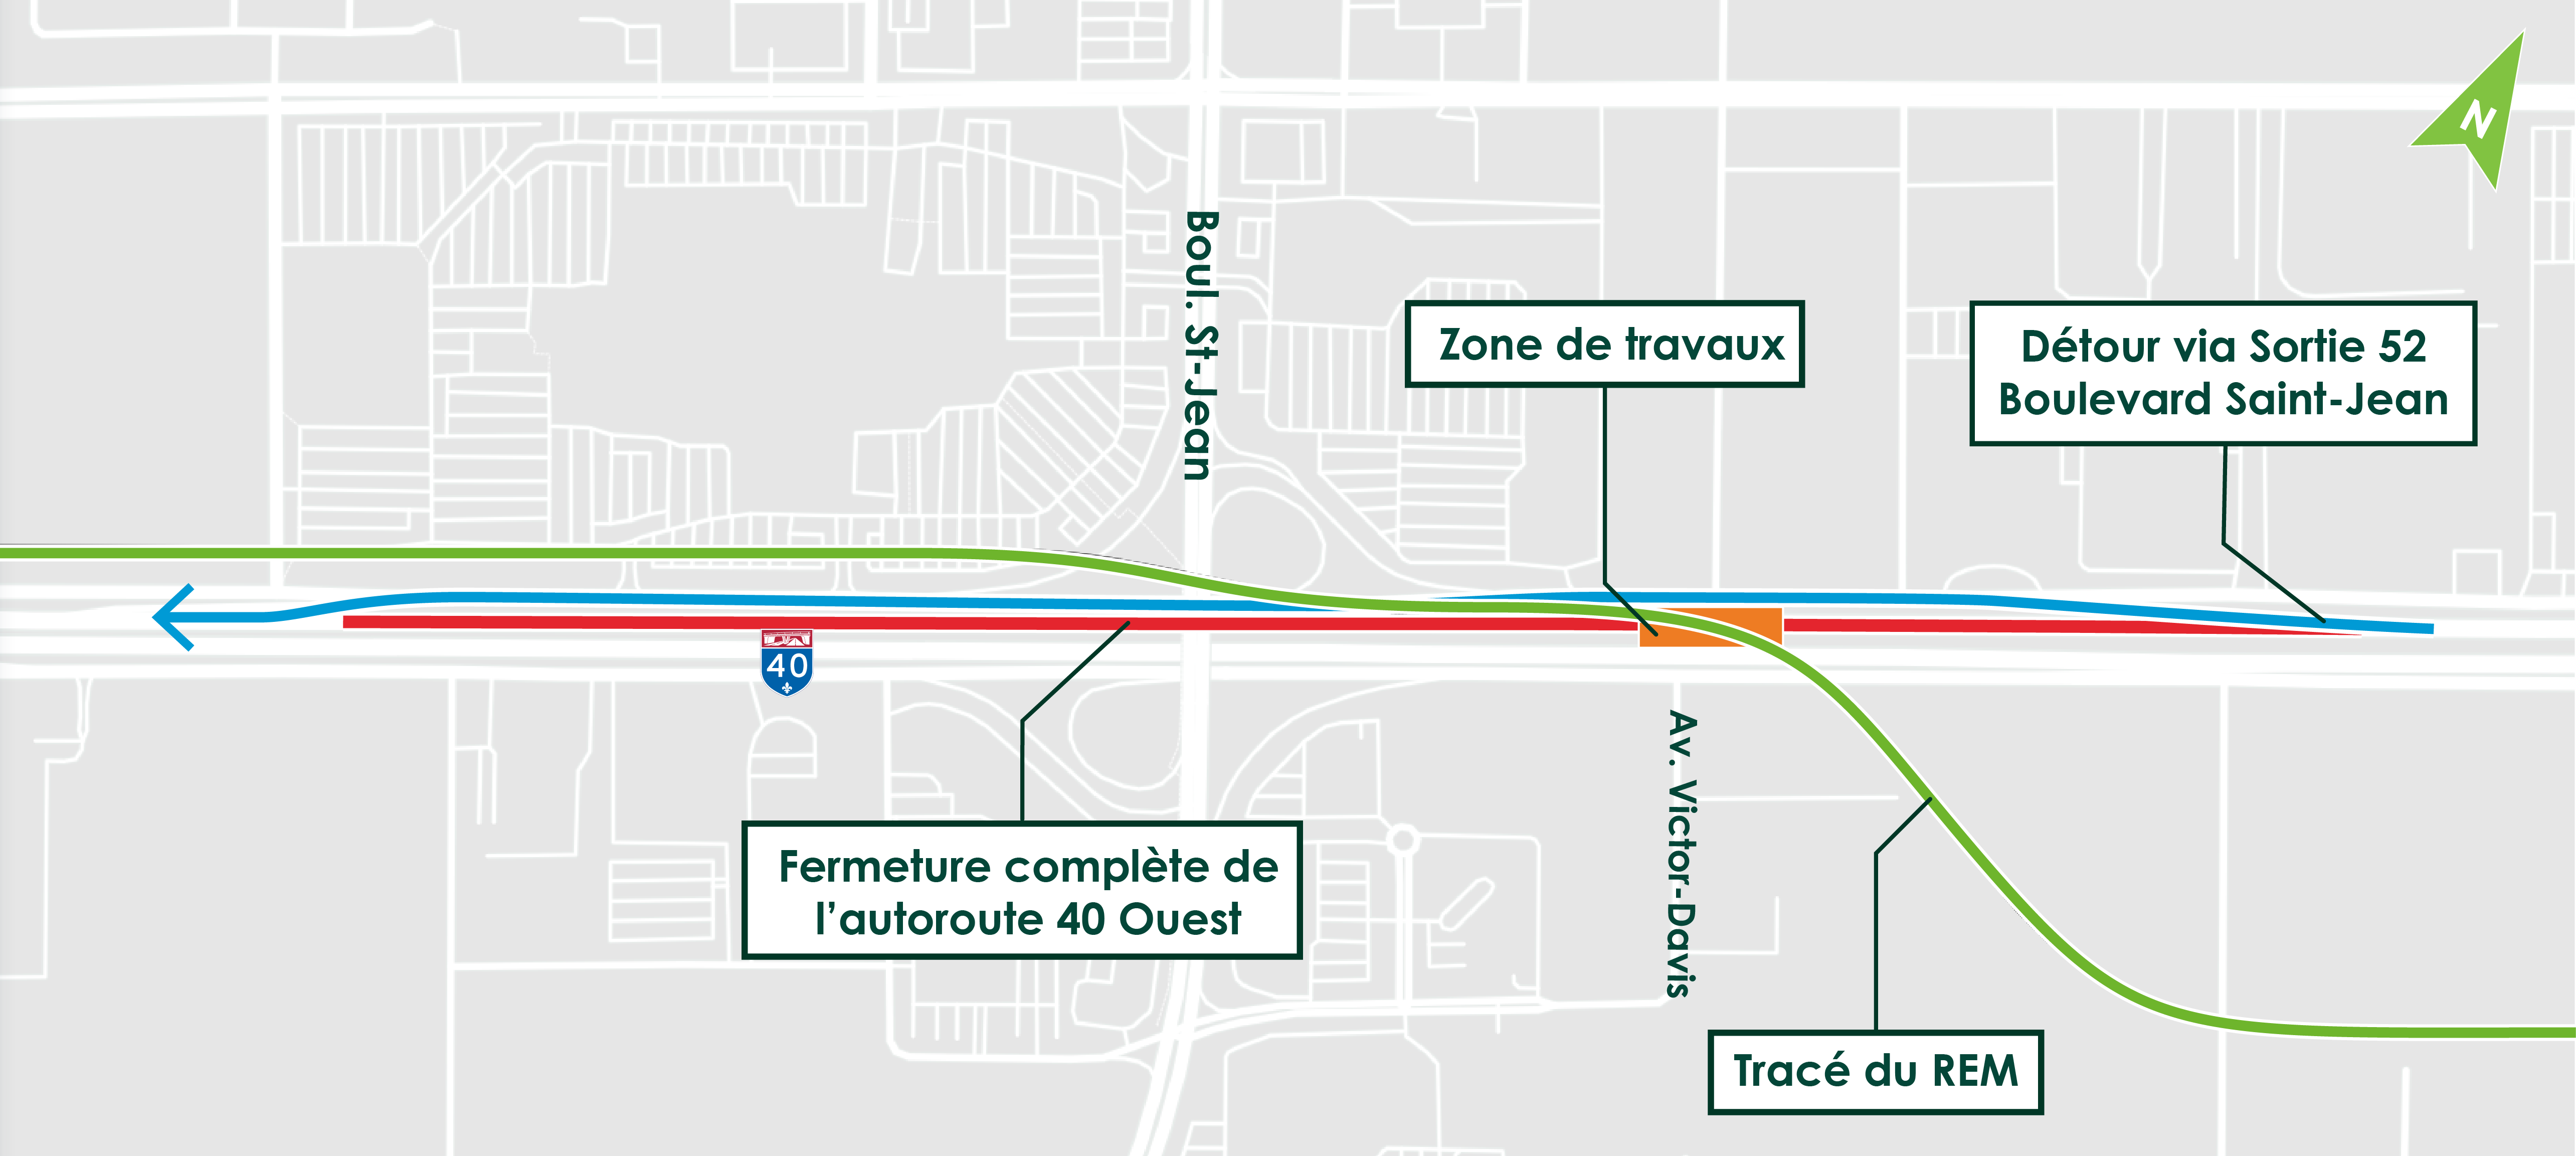 Carte qui illustre la zone des travaux ainsi que le chemin de détour lors de la fermeture de l'autoroute 40.